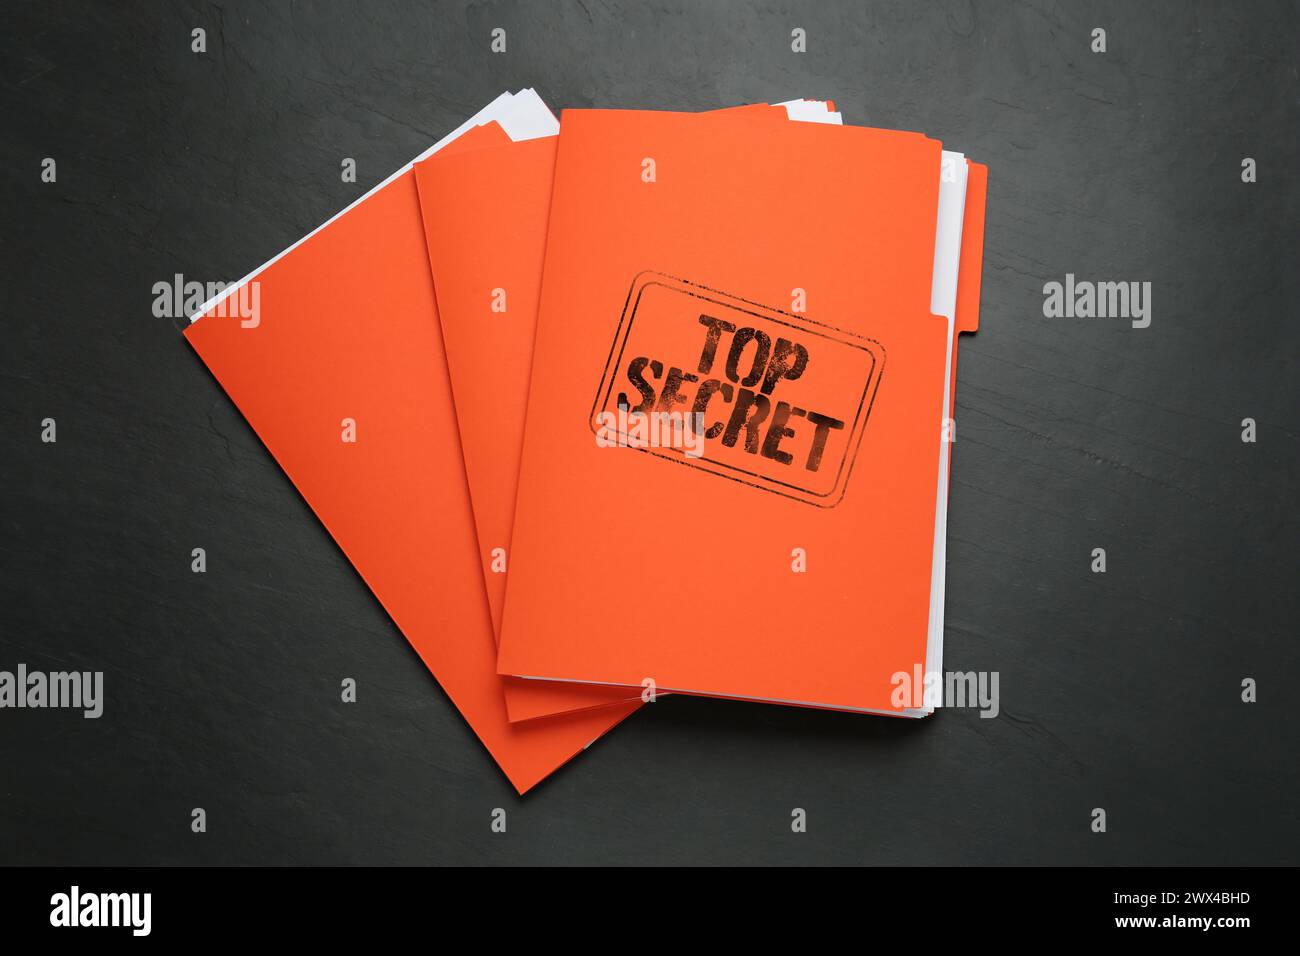 Streng geheimer Stempel. Orangefarbene Dateien mit Dokumenten auf schwarzer Tabelle, Draufsicht Stockfoto